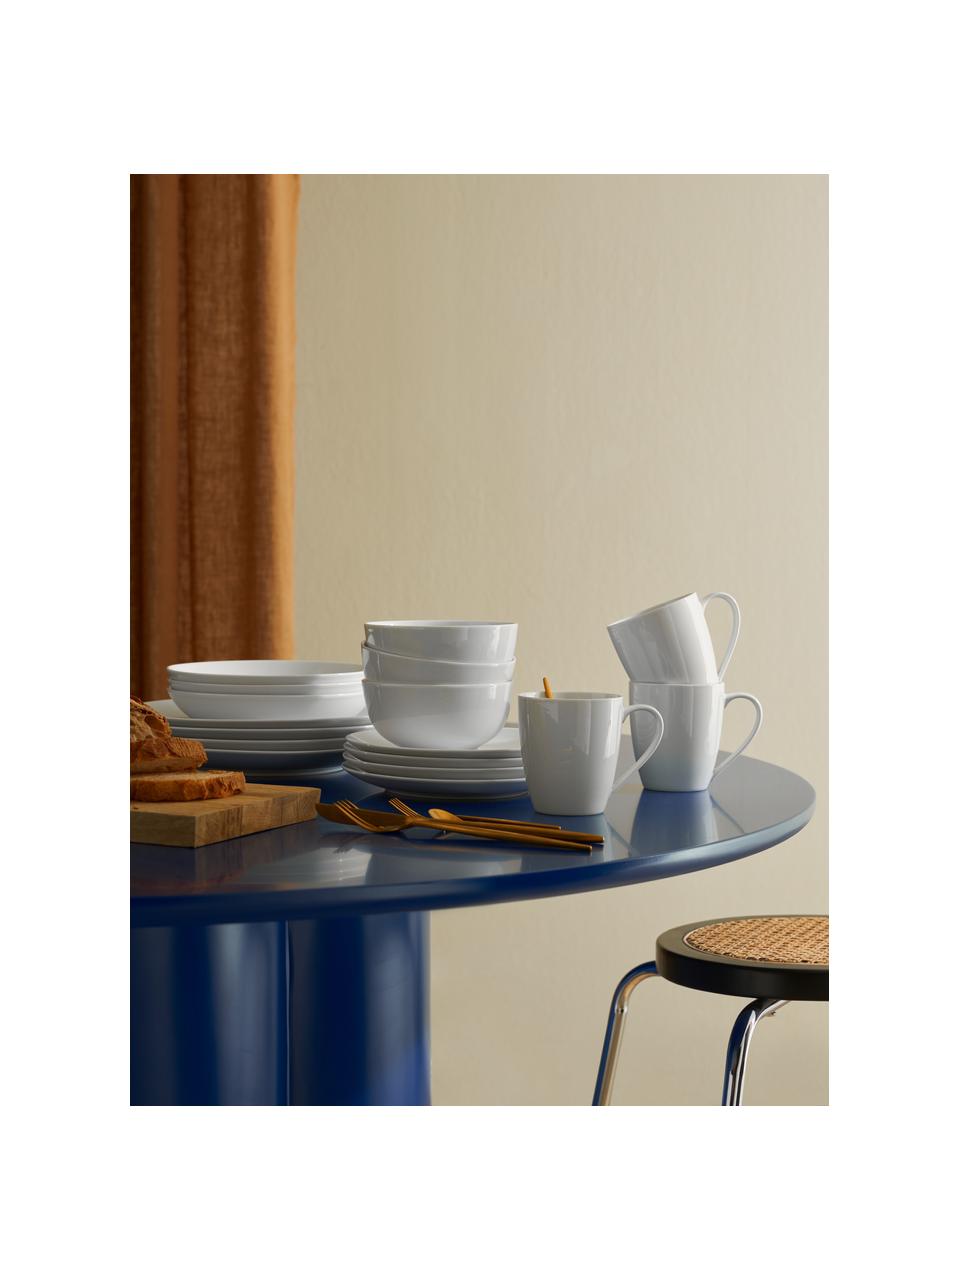 Porcelánové talíře Delight Modern, 2 ks, Porcelán, Bílá, Ø 27 cm